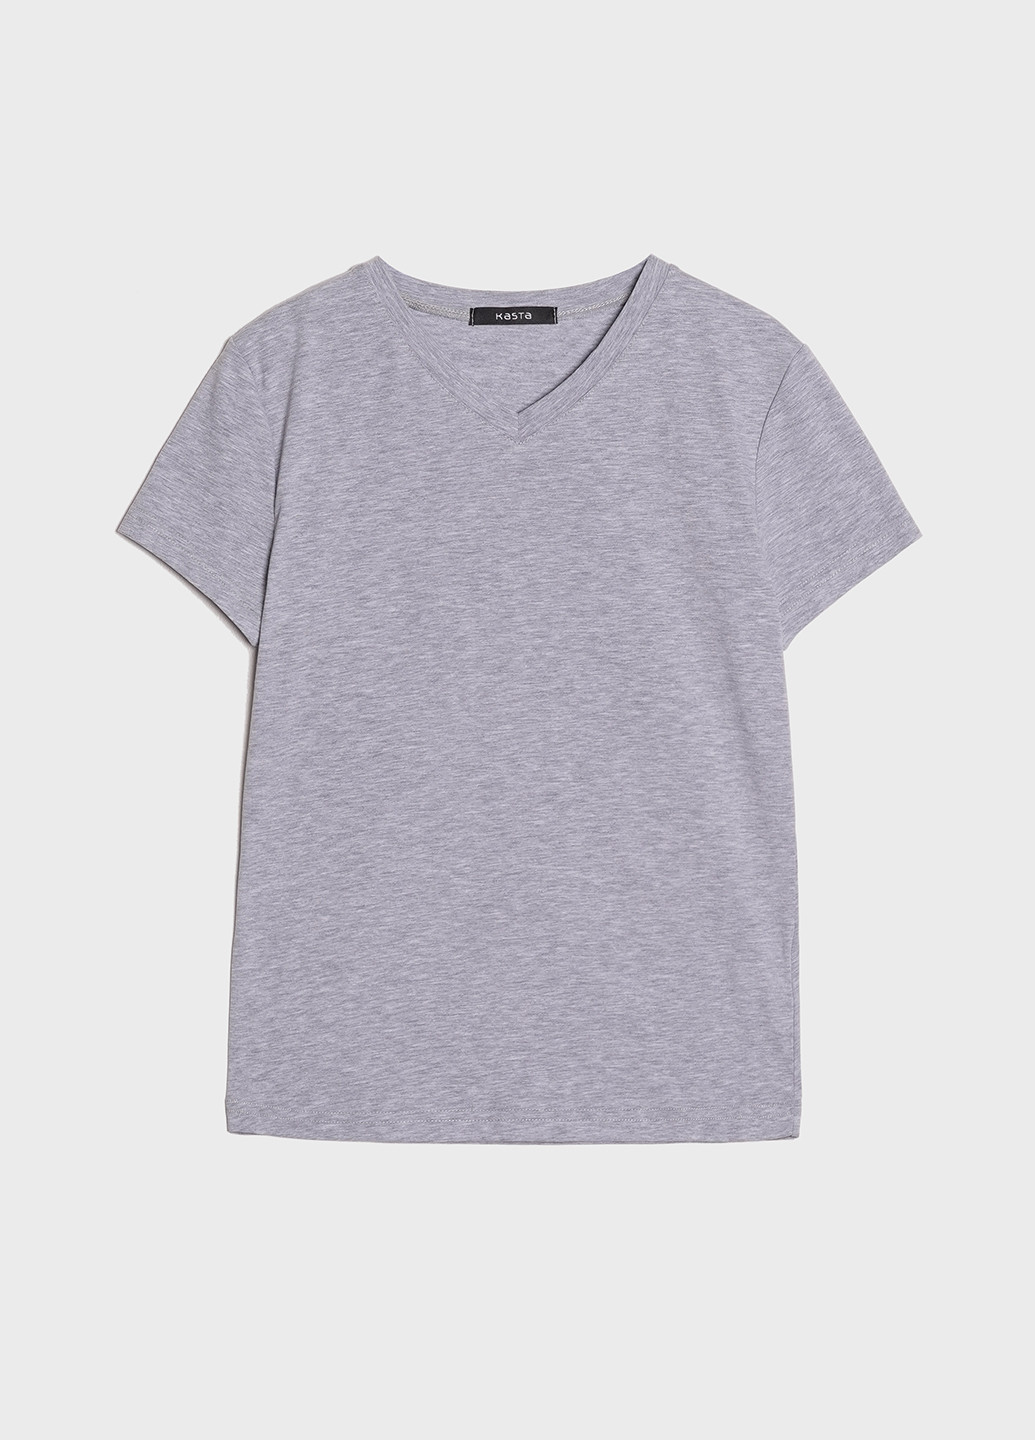 Сіра літня футболка жіноча напівприлегла KASTA design